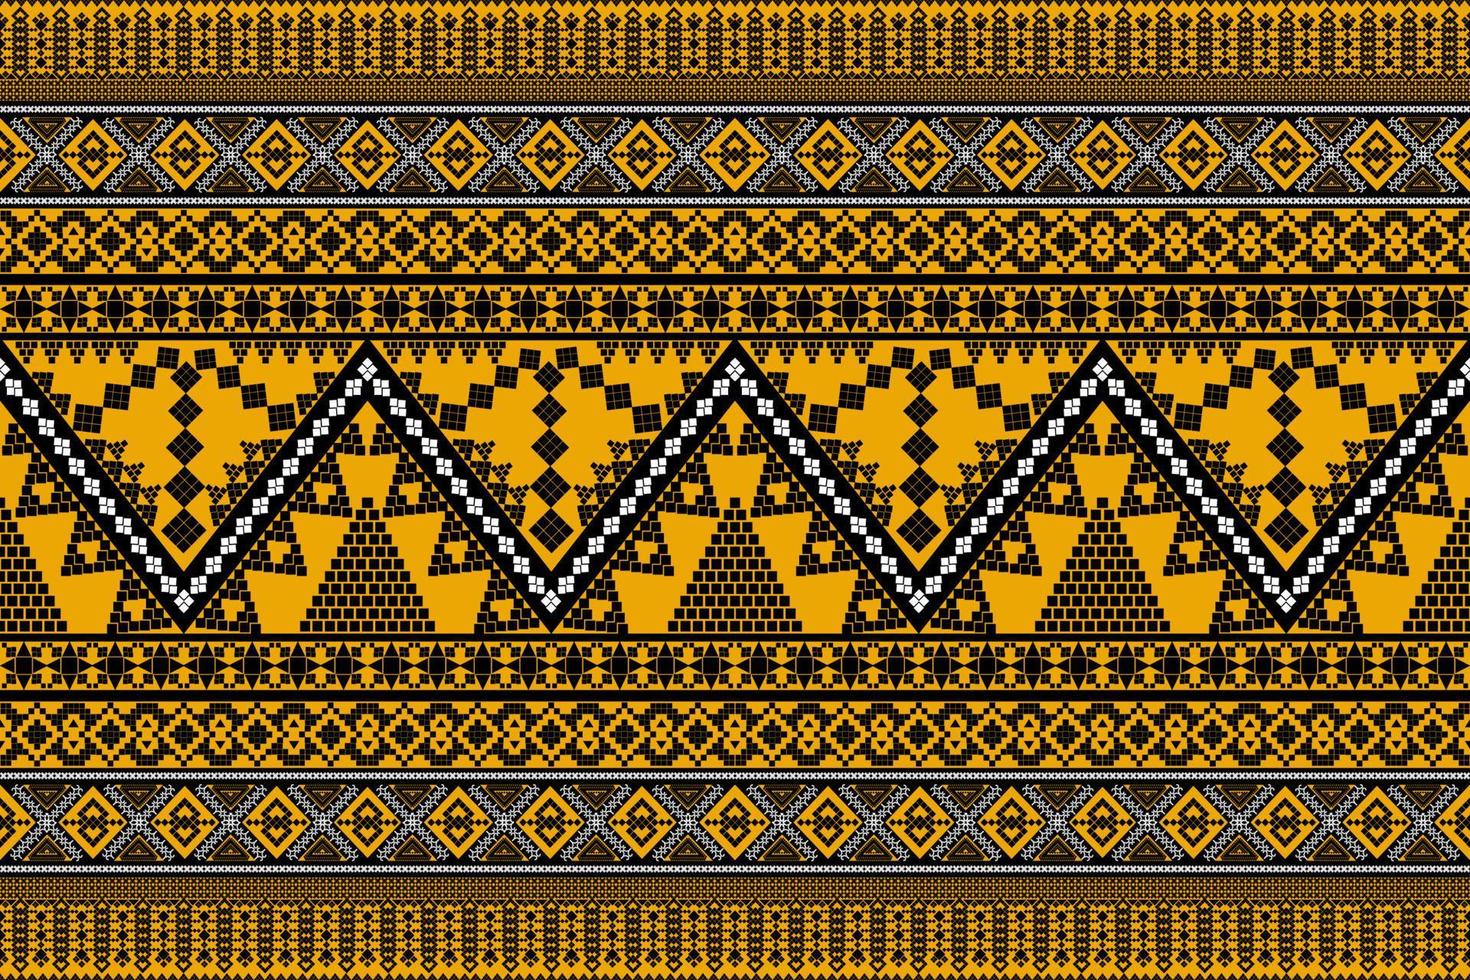 sömlös geometrisk etnisk asiatisk orientalisk och tradition mönsterdesign för textur och bakgrund. siden- och tygmönsterdekoration för mattor, kläder, omslag och tapeter vektor